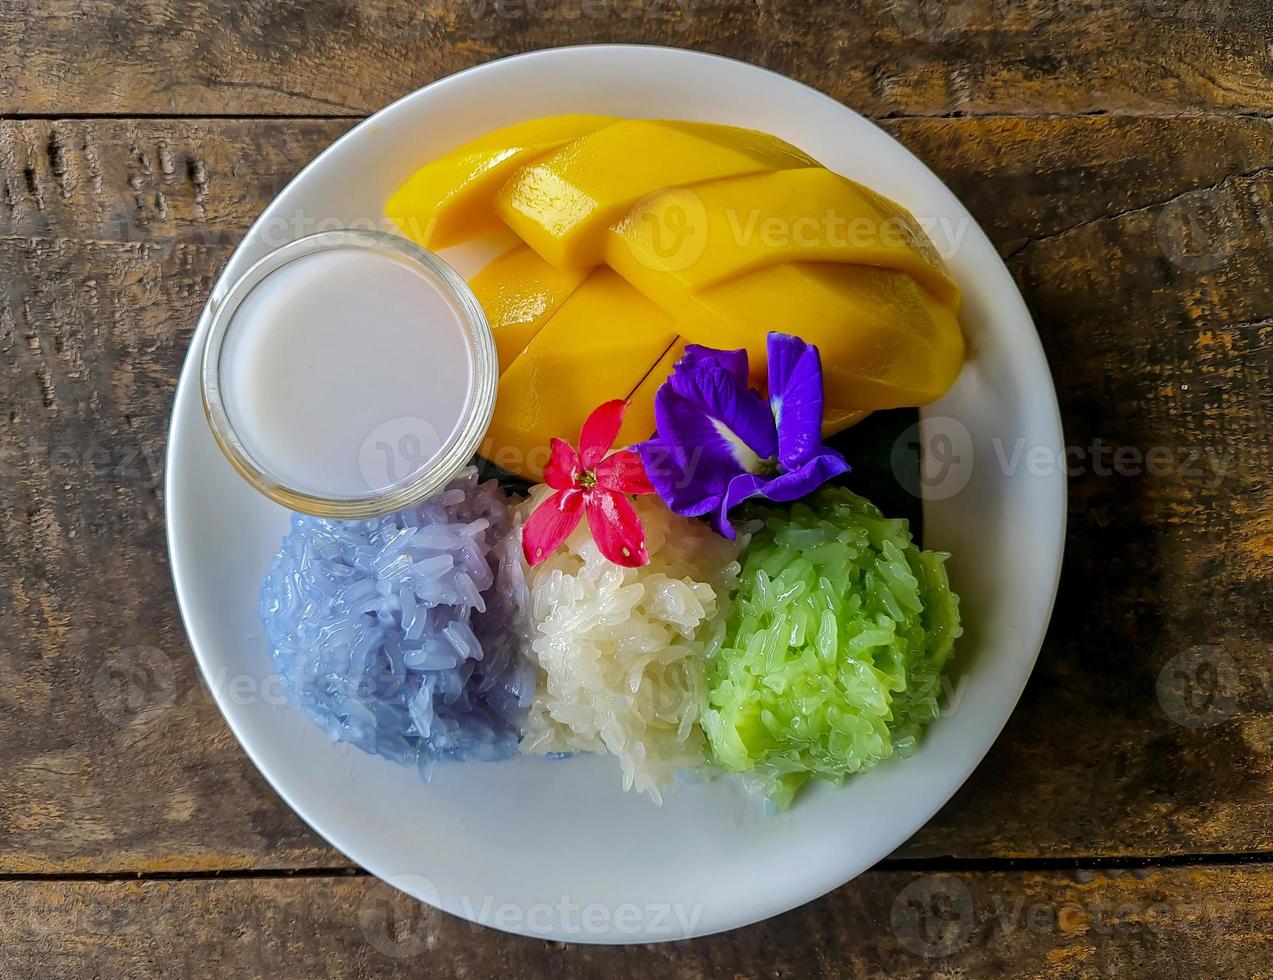 Frais sucré mangue servi avec 3 couleurs gluant riz et noix de coco Lait sur blanc plat. photo